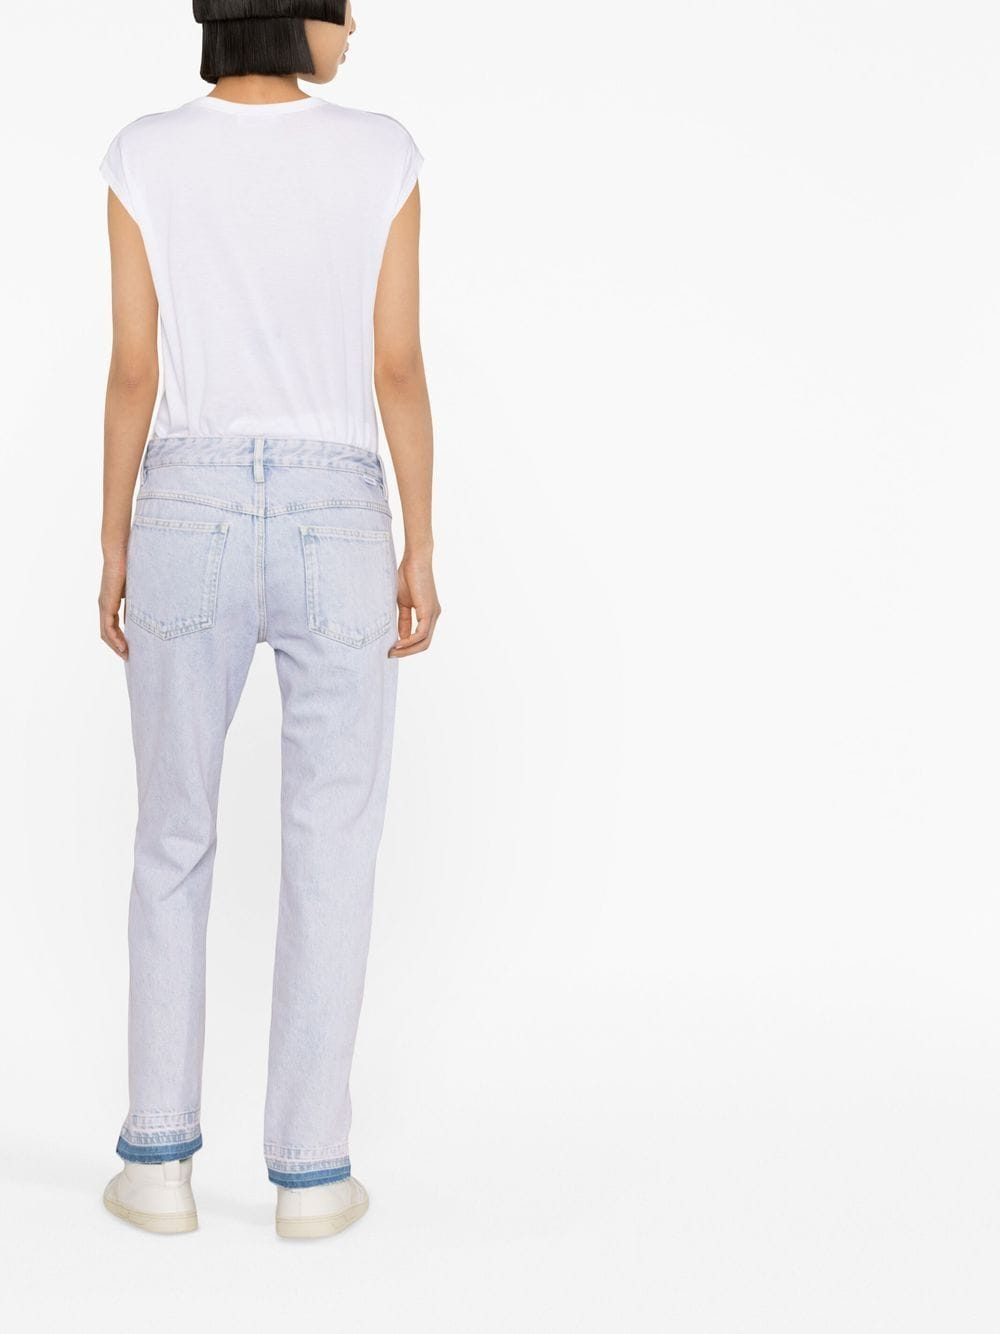 MARANT ÉTOILE low-rise slim-cut jeans